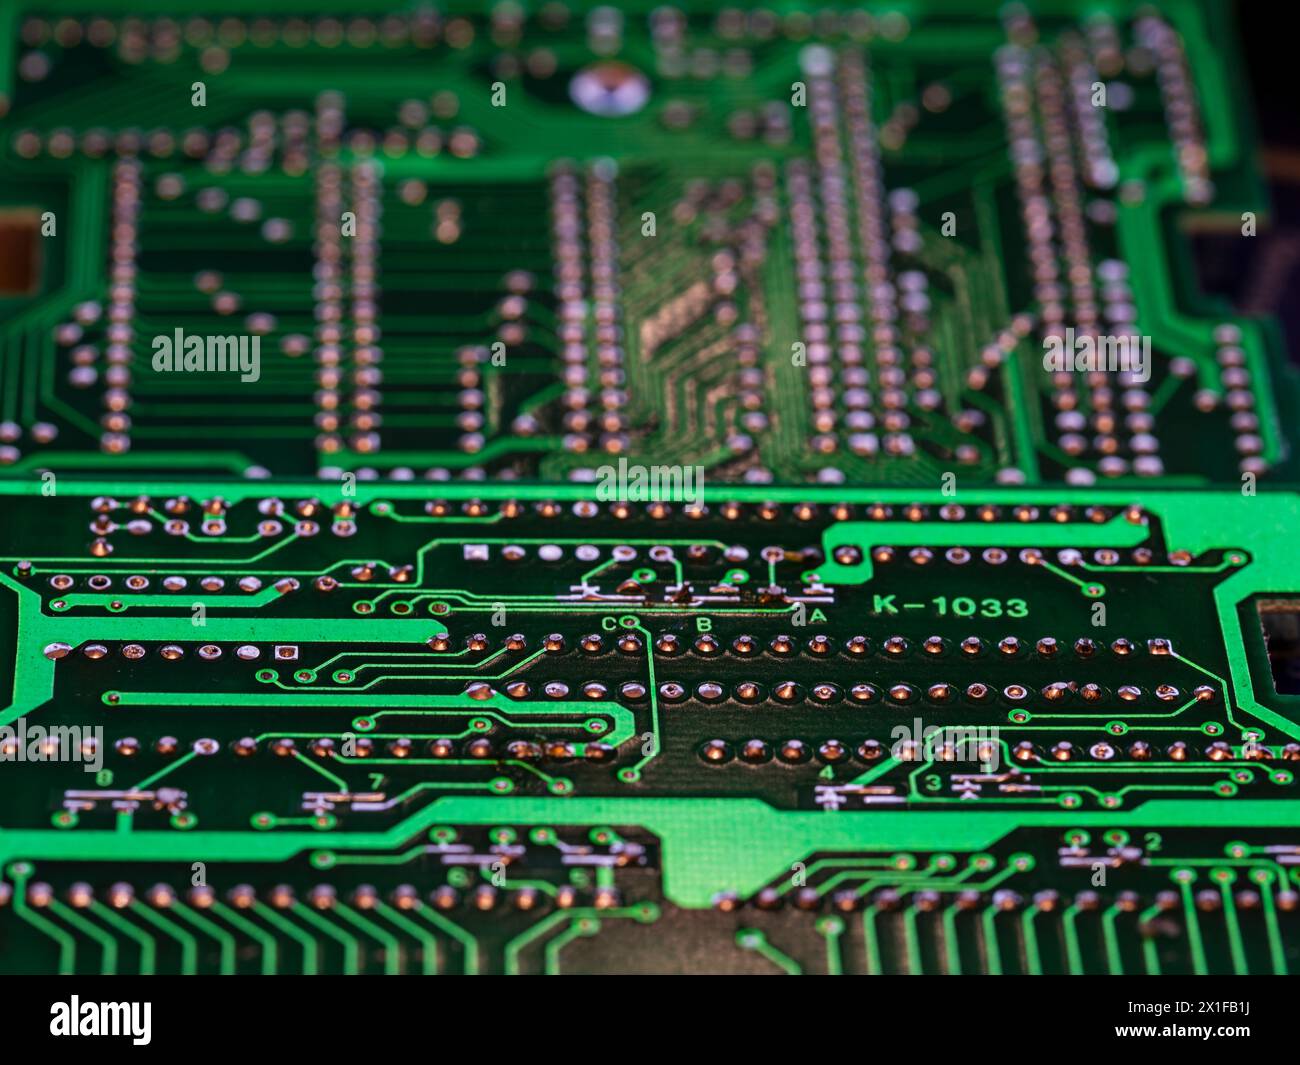 Detalle de múltiples de circuitos impresos de una placa electrónica de color verde Foto Stock